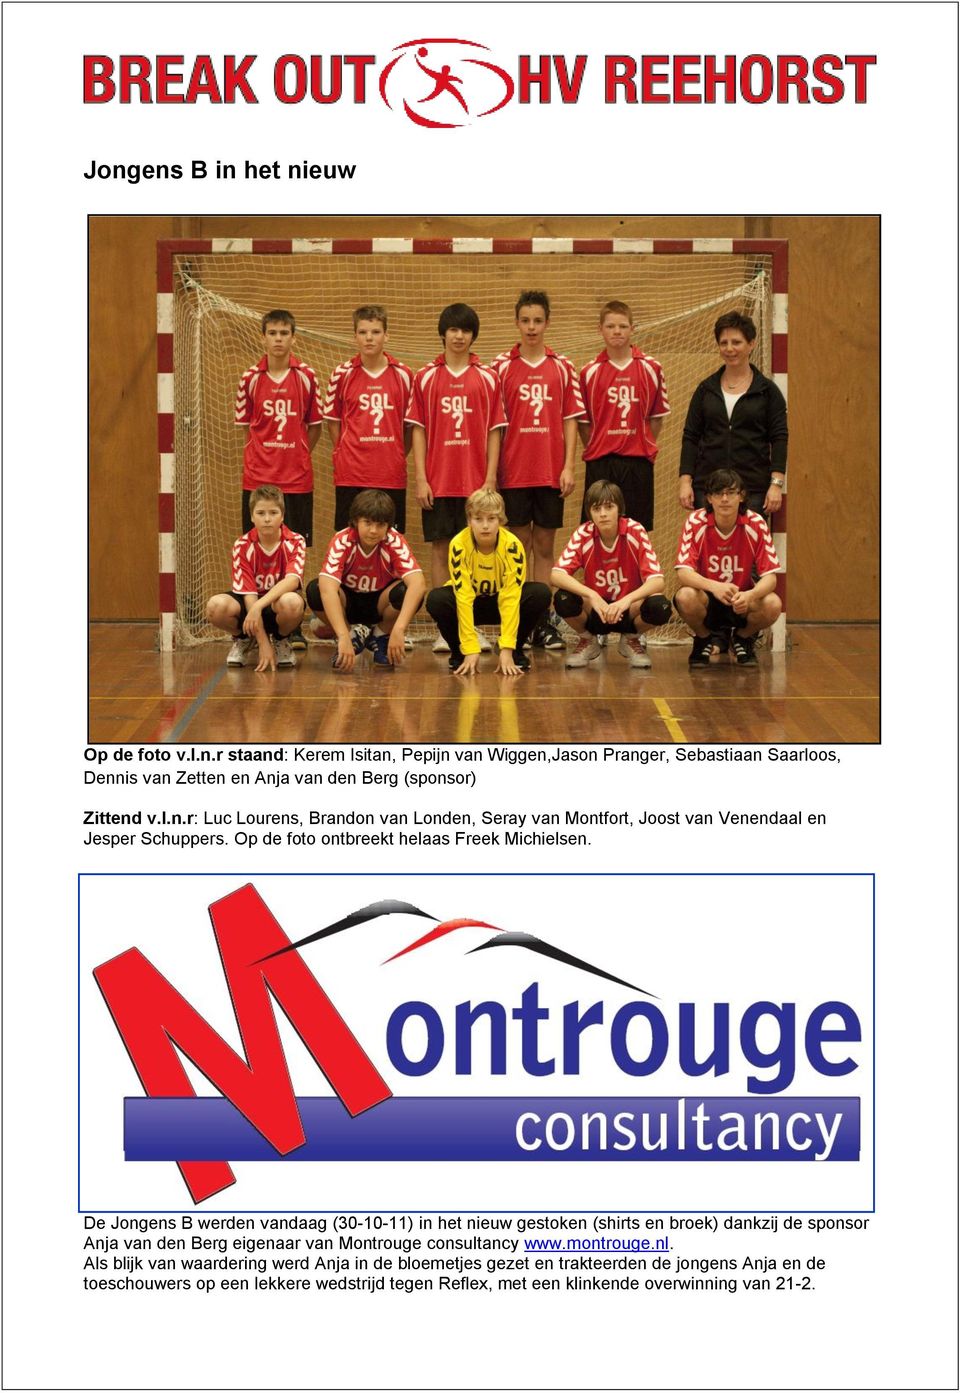 De Jongens B werden vandaag (30-10-11) in het nieuw gestoken (shirts en broek) dankzij de sponsor Anja van den Berg eigenaar van Montrouge consultancy www.montrouge.nl.